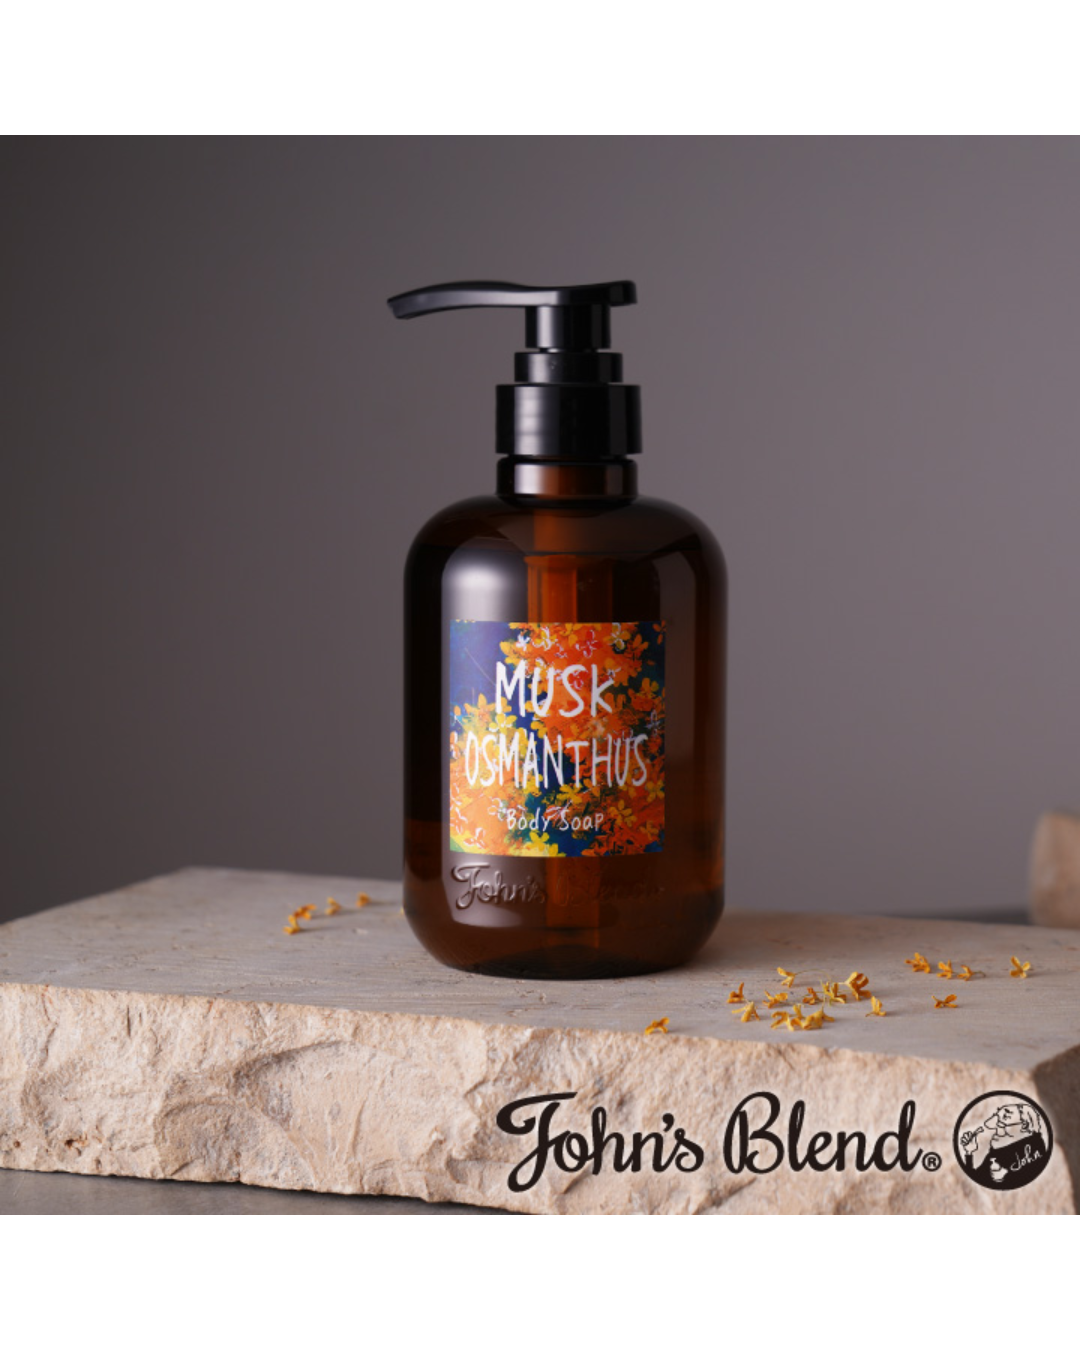 John's Blend Musk Osmanthus Body Soap – Unique Bunny